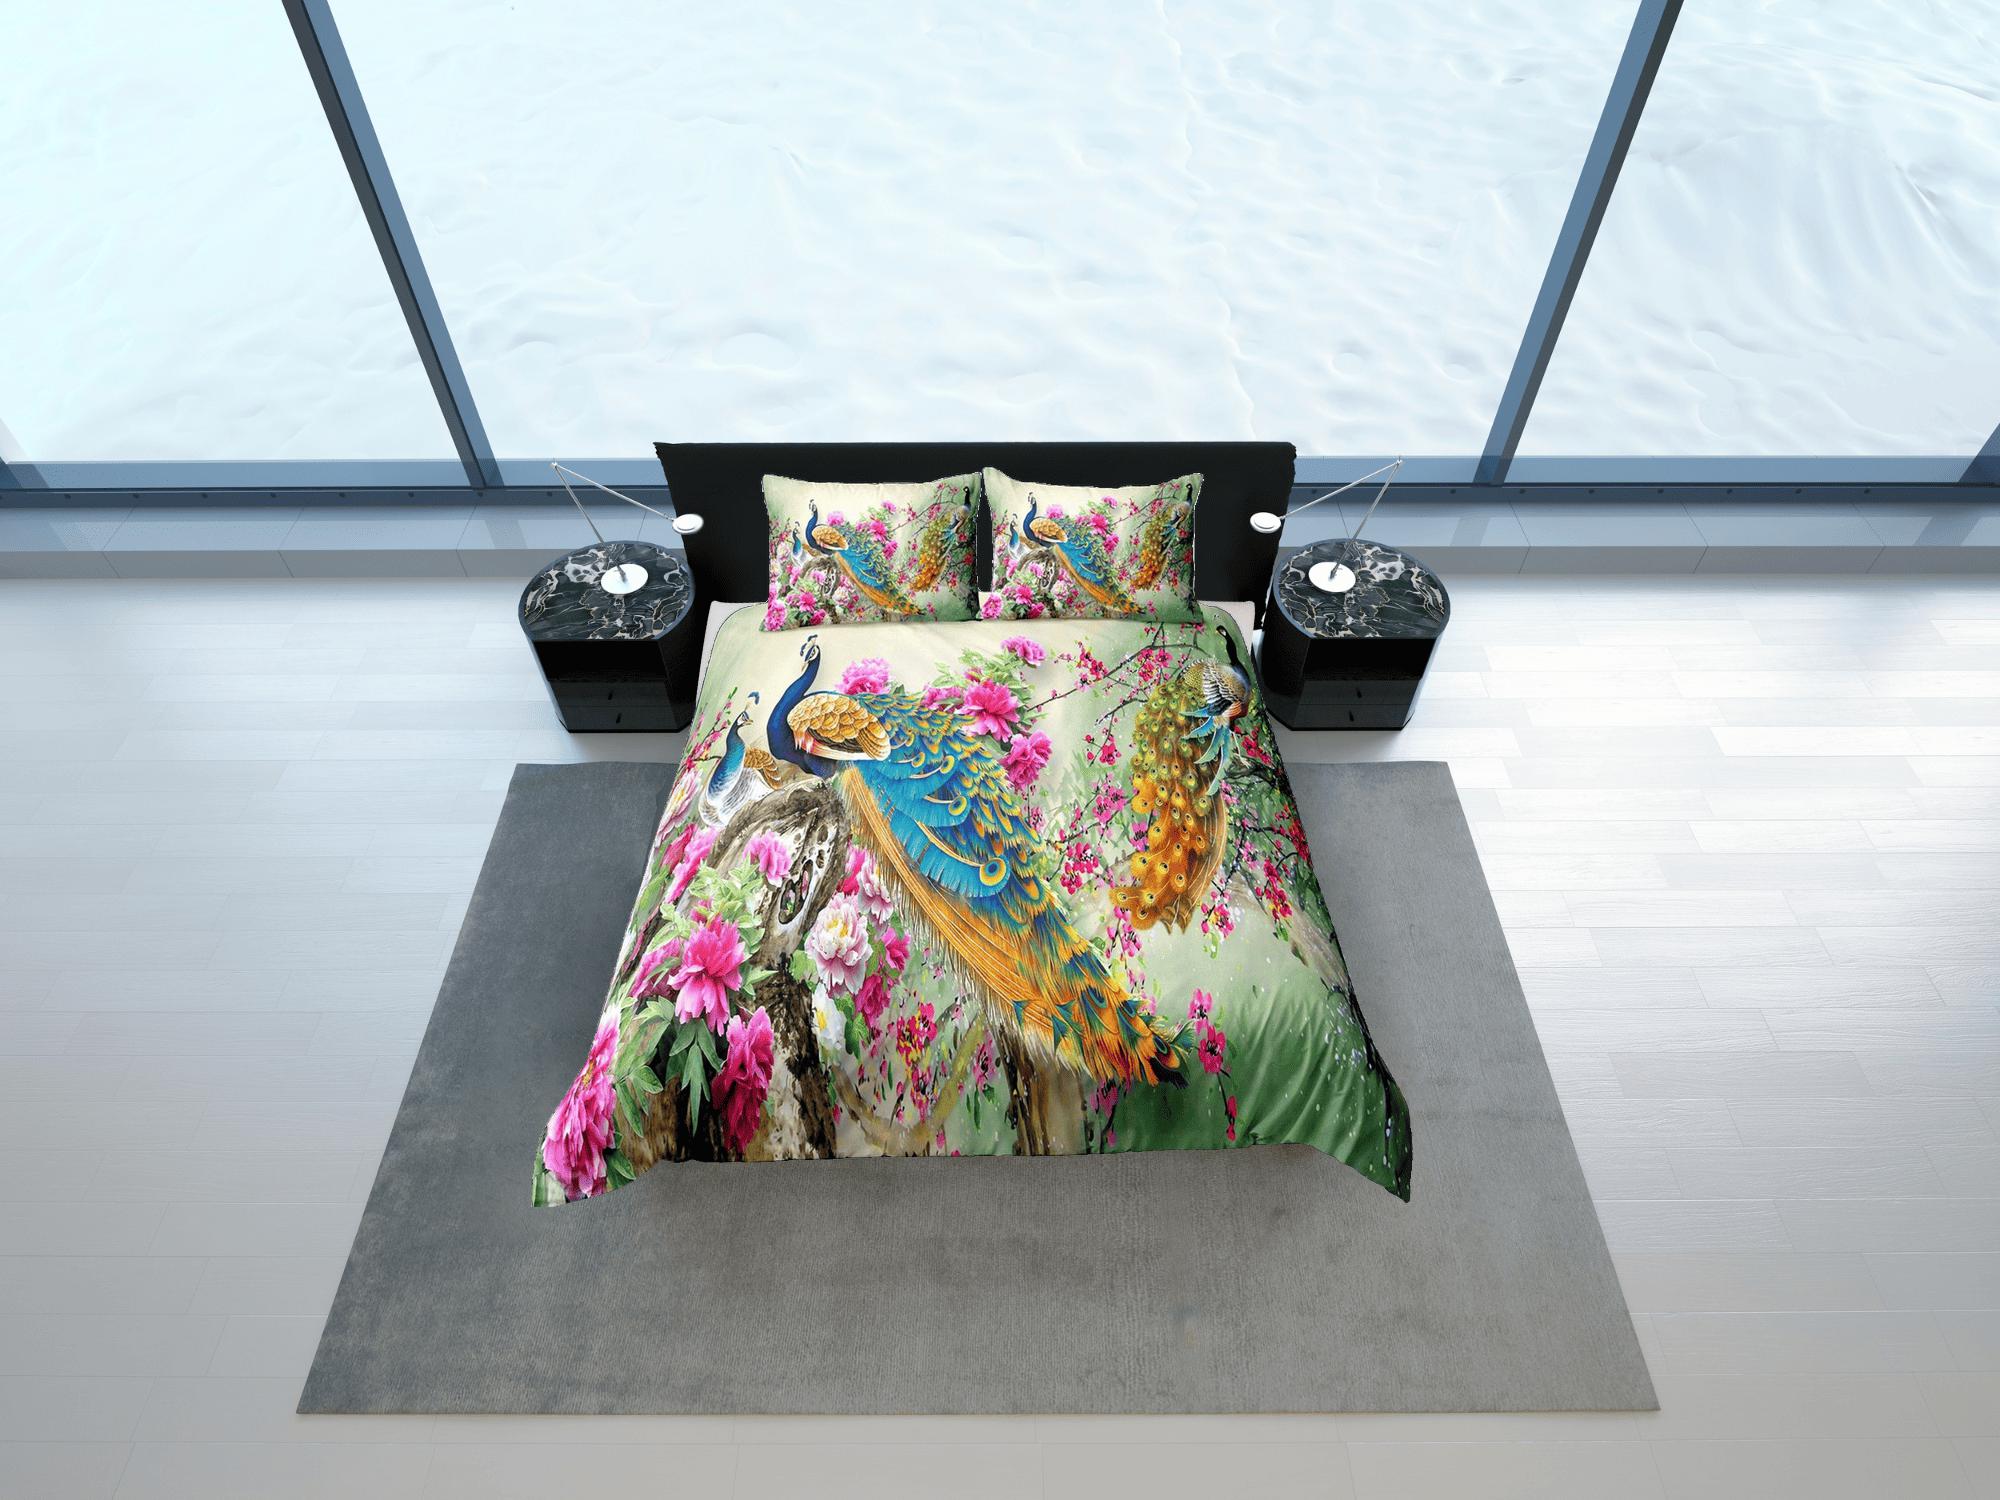 daintyduvet Colorful peacock aesthetic bedding set full, luxury duvet cover queen, king, boho duvet, designer bedding, maximalist decor floral prints